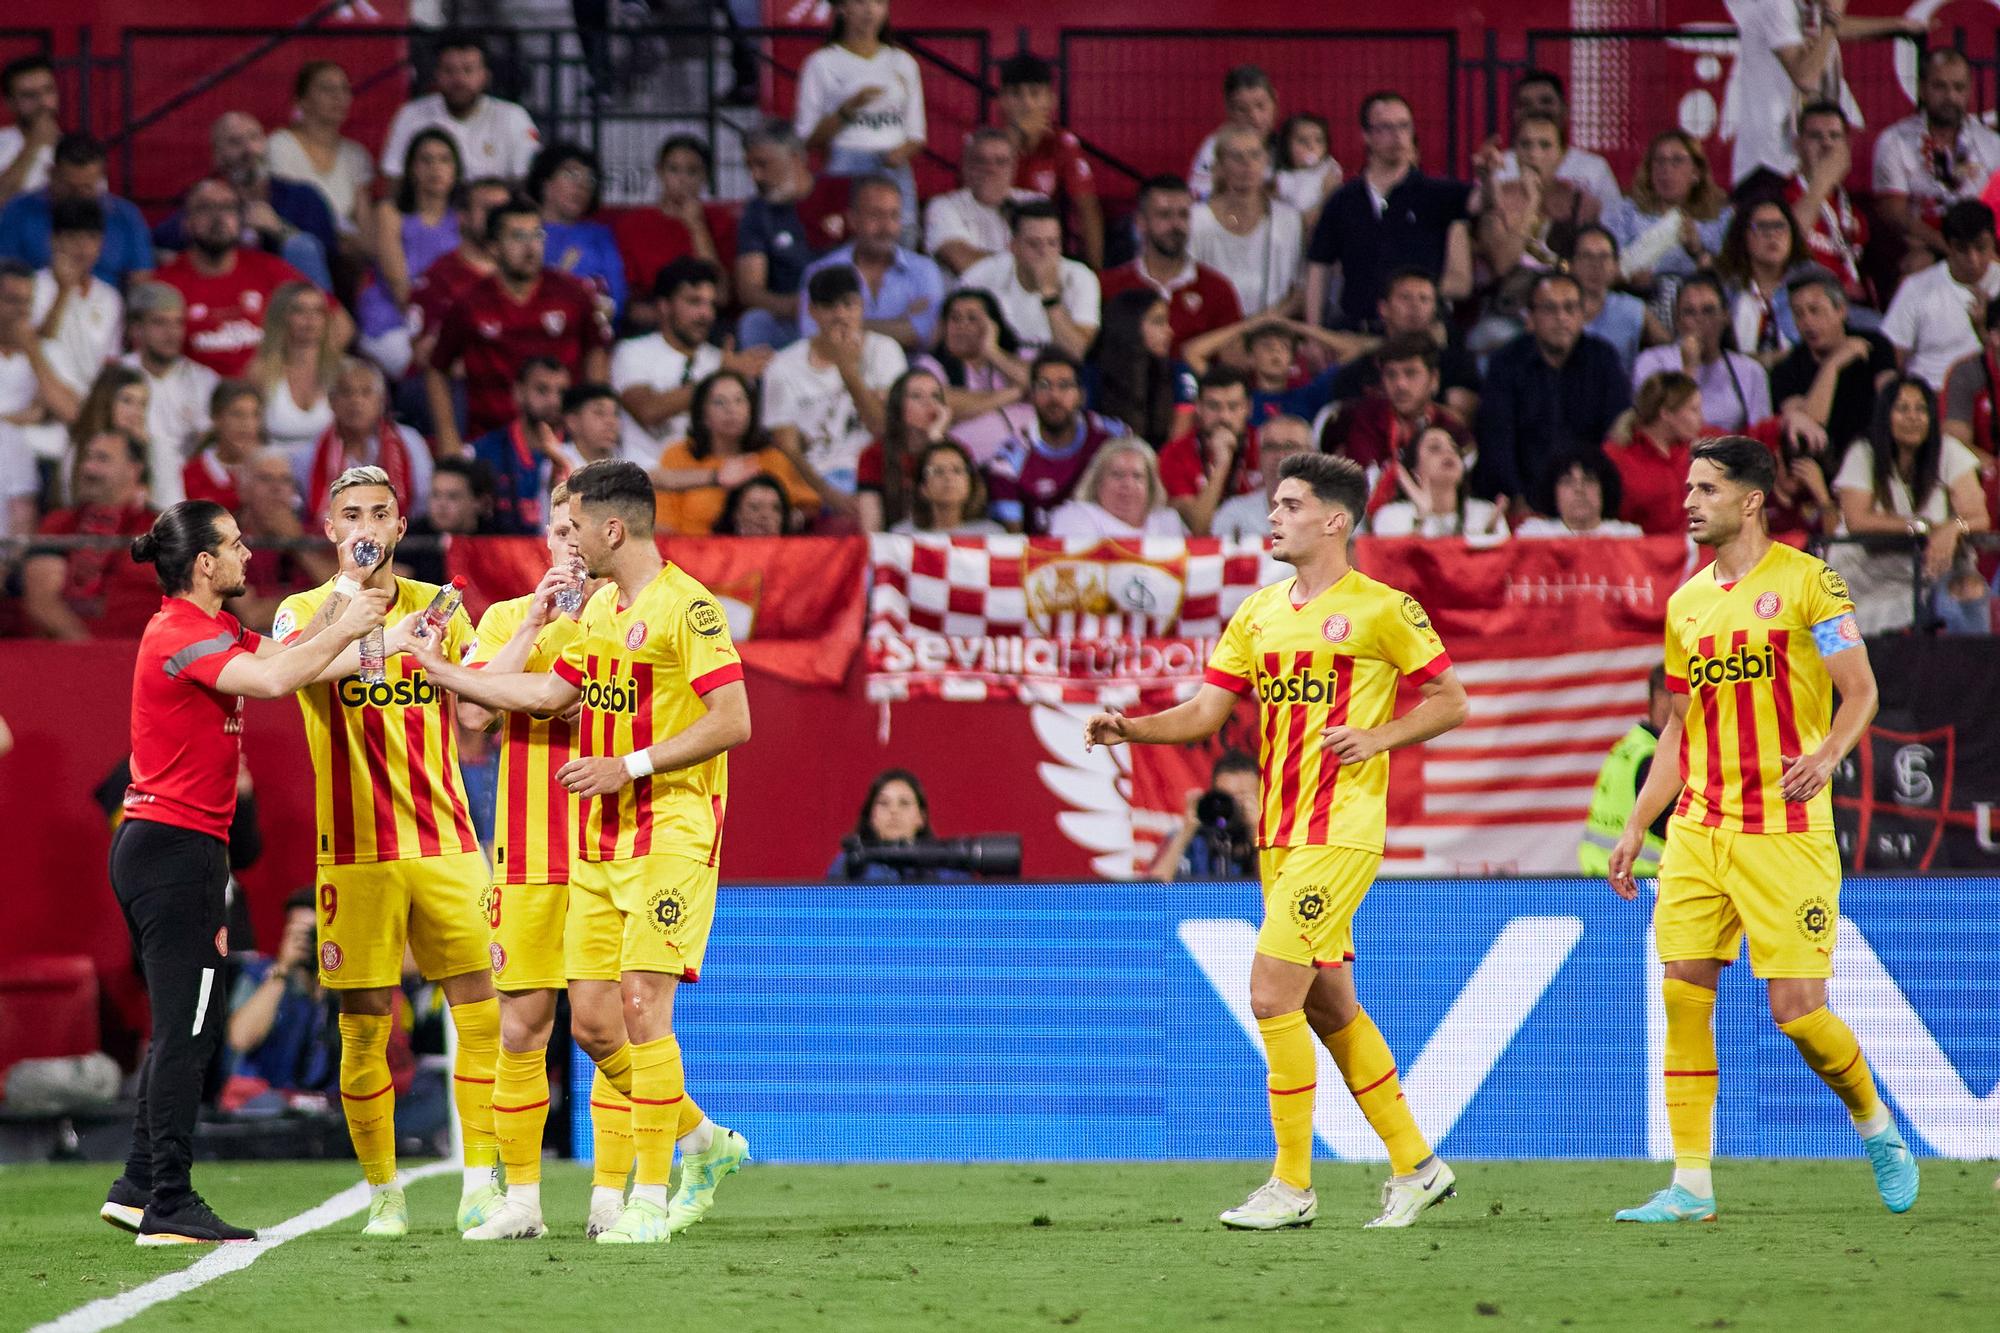 Les millors imatges de la victòria del Girona a Sevilla